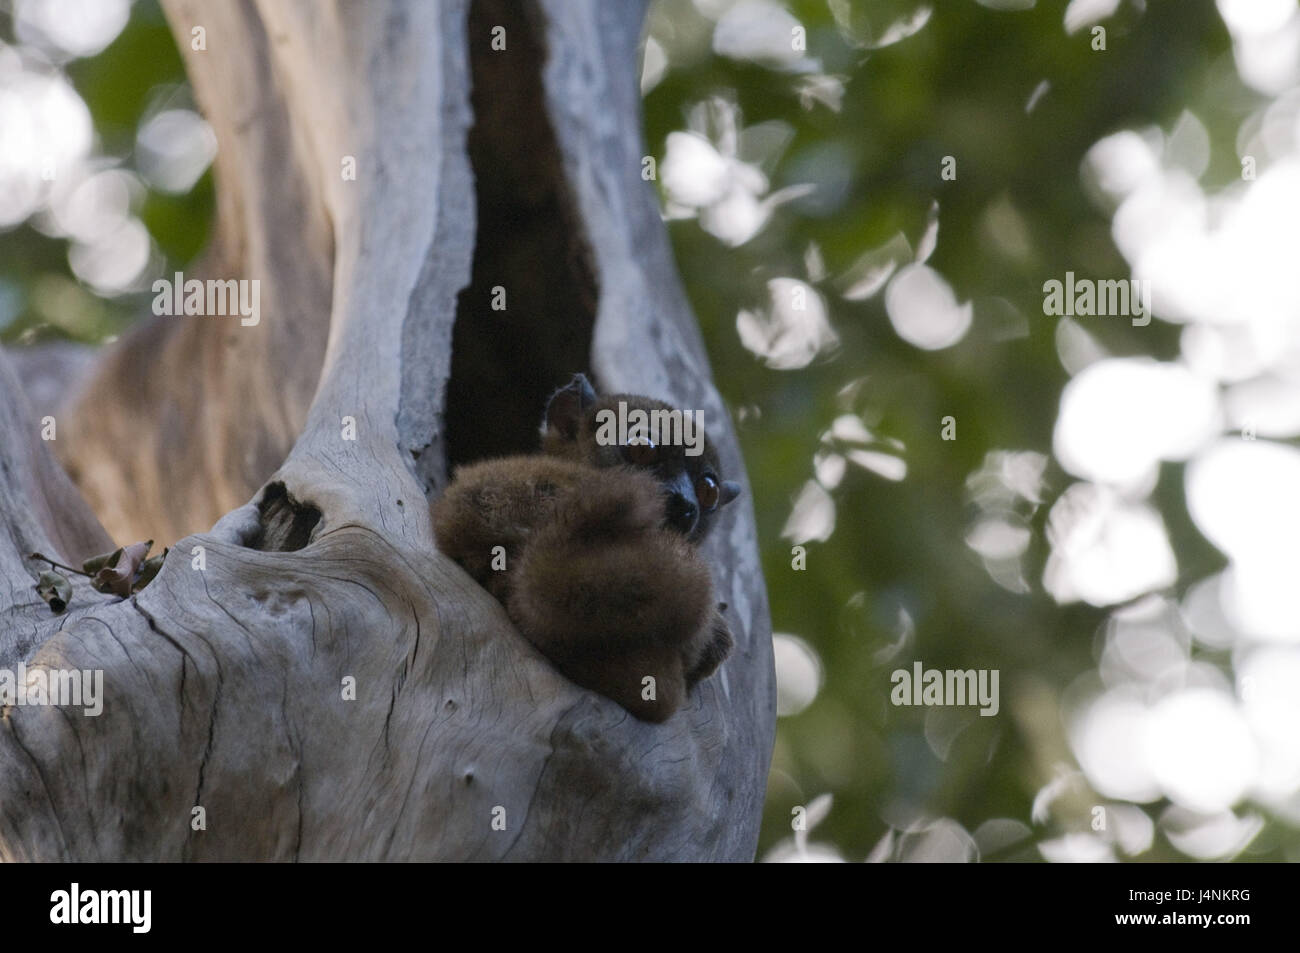 Madagascar, Ankarana national park, tree, branch, Sanford lemur, Eulemur sanfordi, sit, Stock Photo